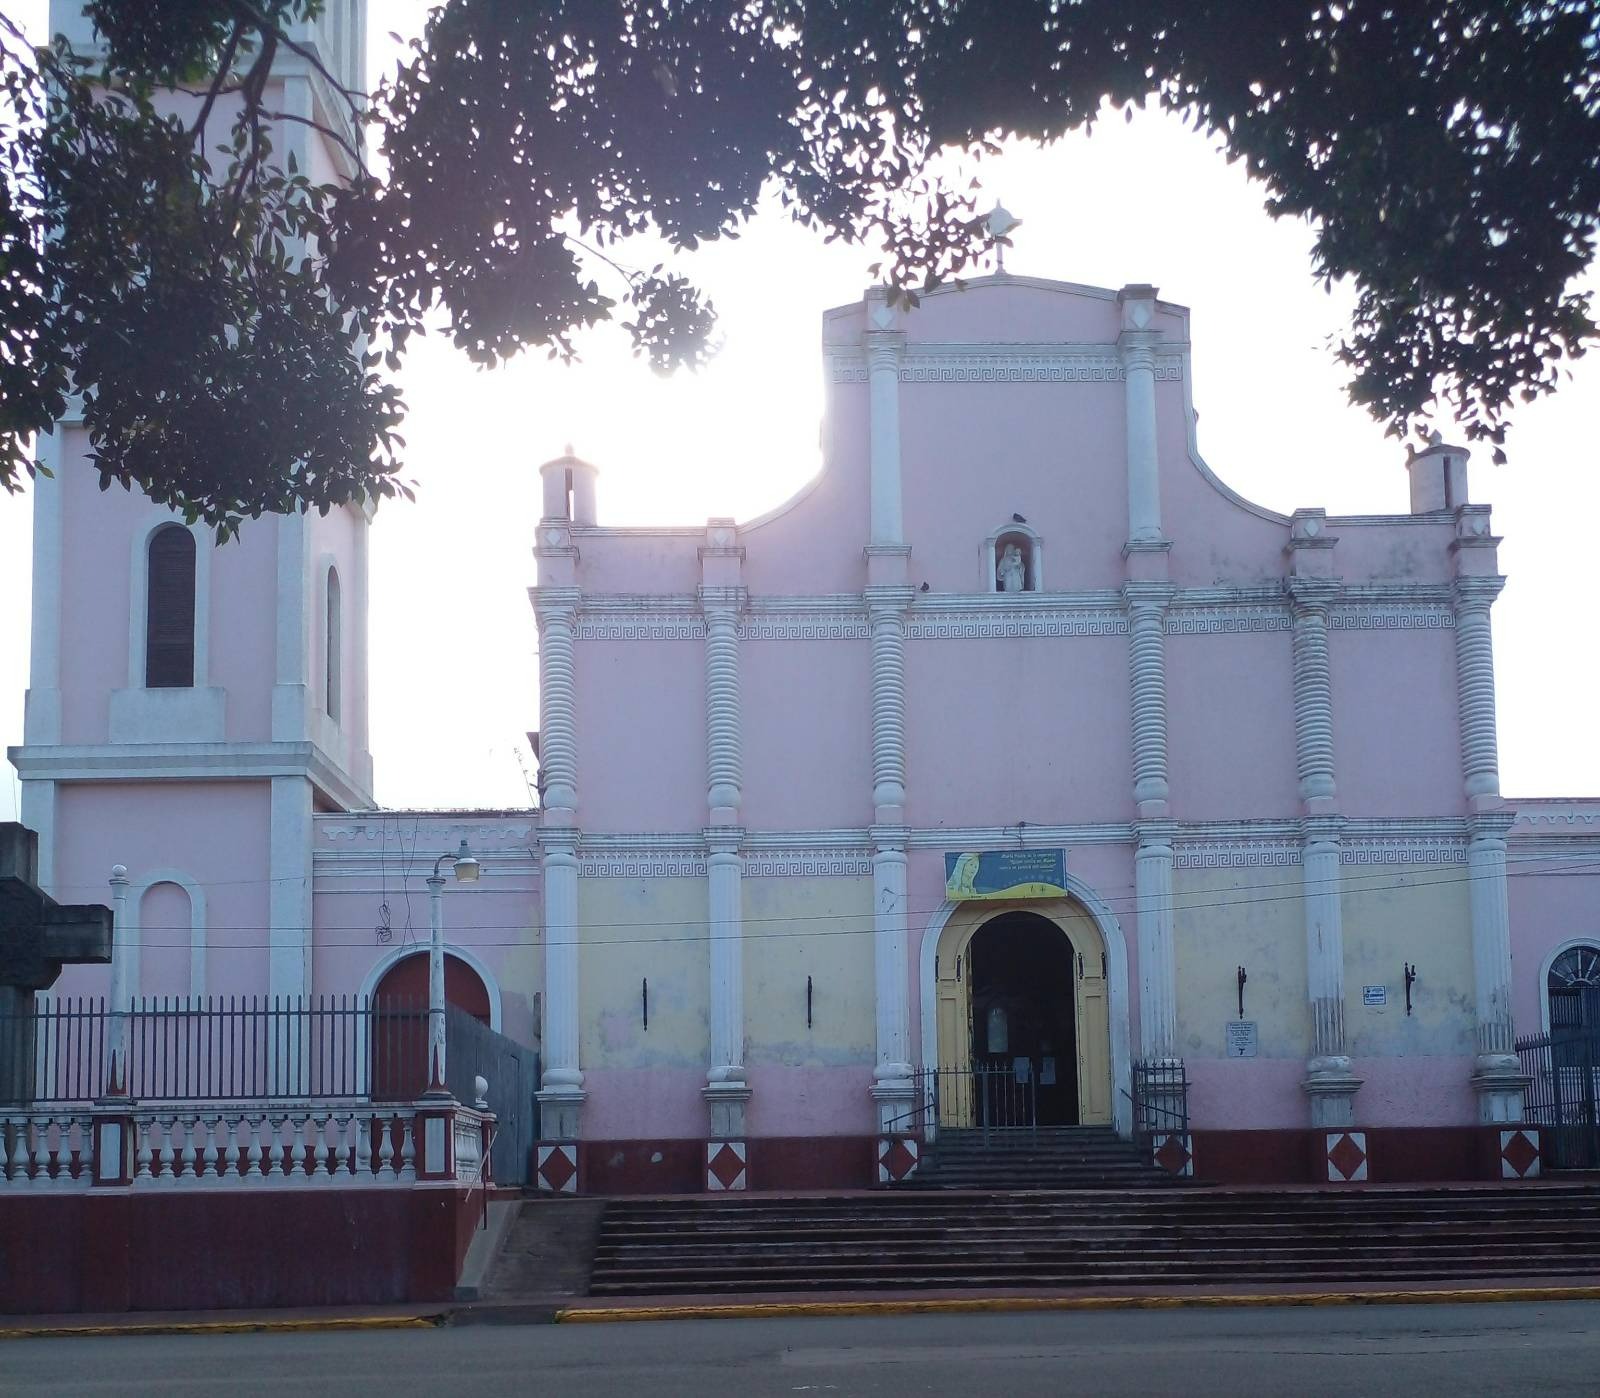 Los más recientes acontecimientos ocurridos en Nicaragua por la dictadura, han sembrado el terror entre la feligresía católica./VEL